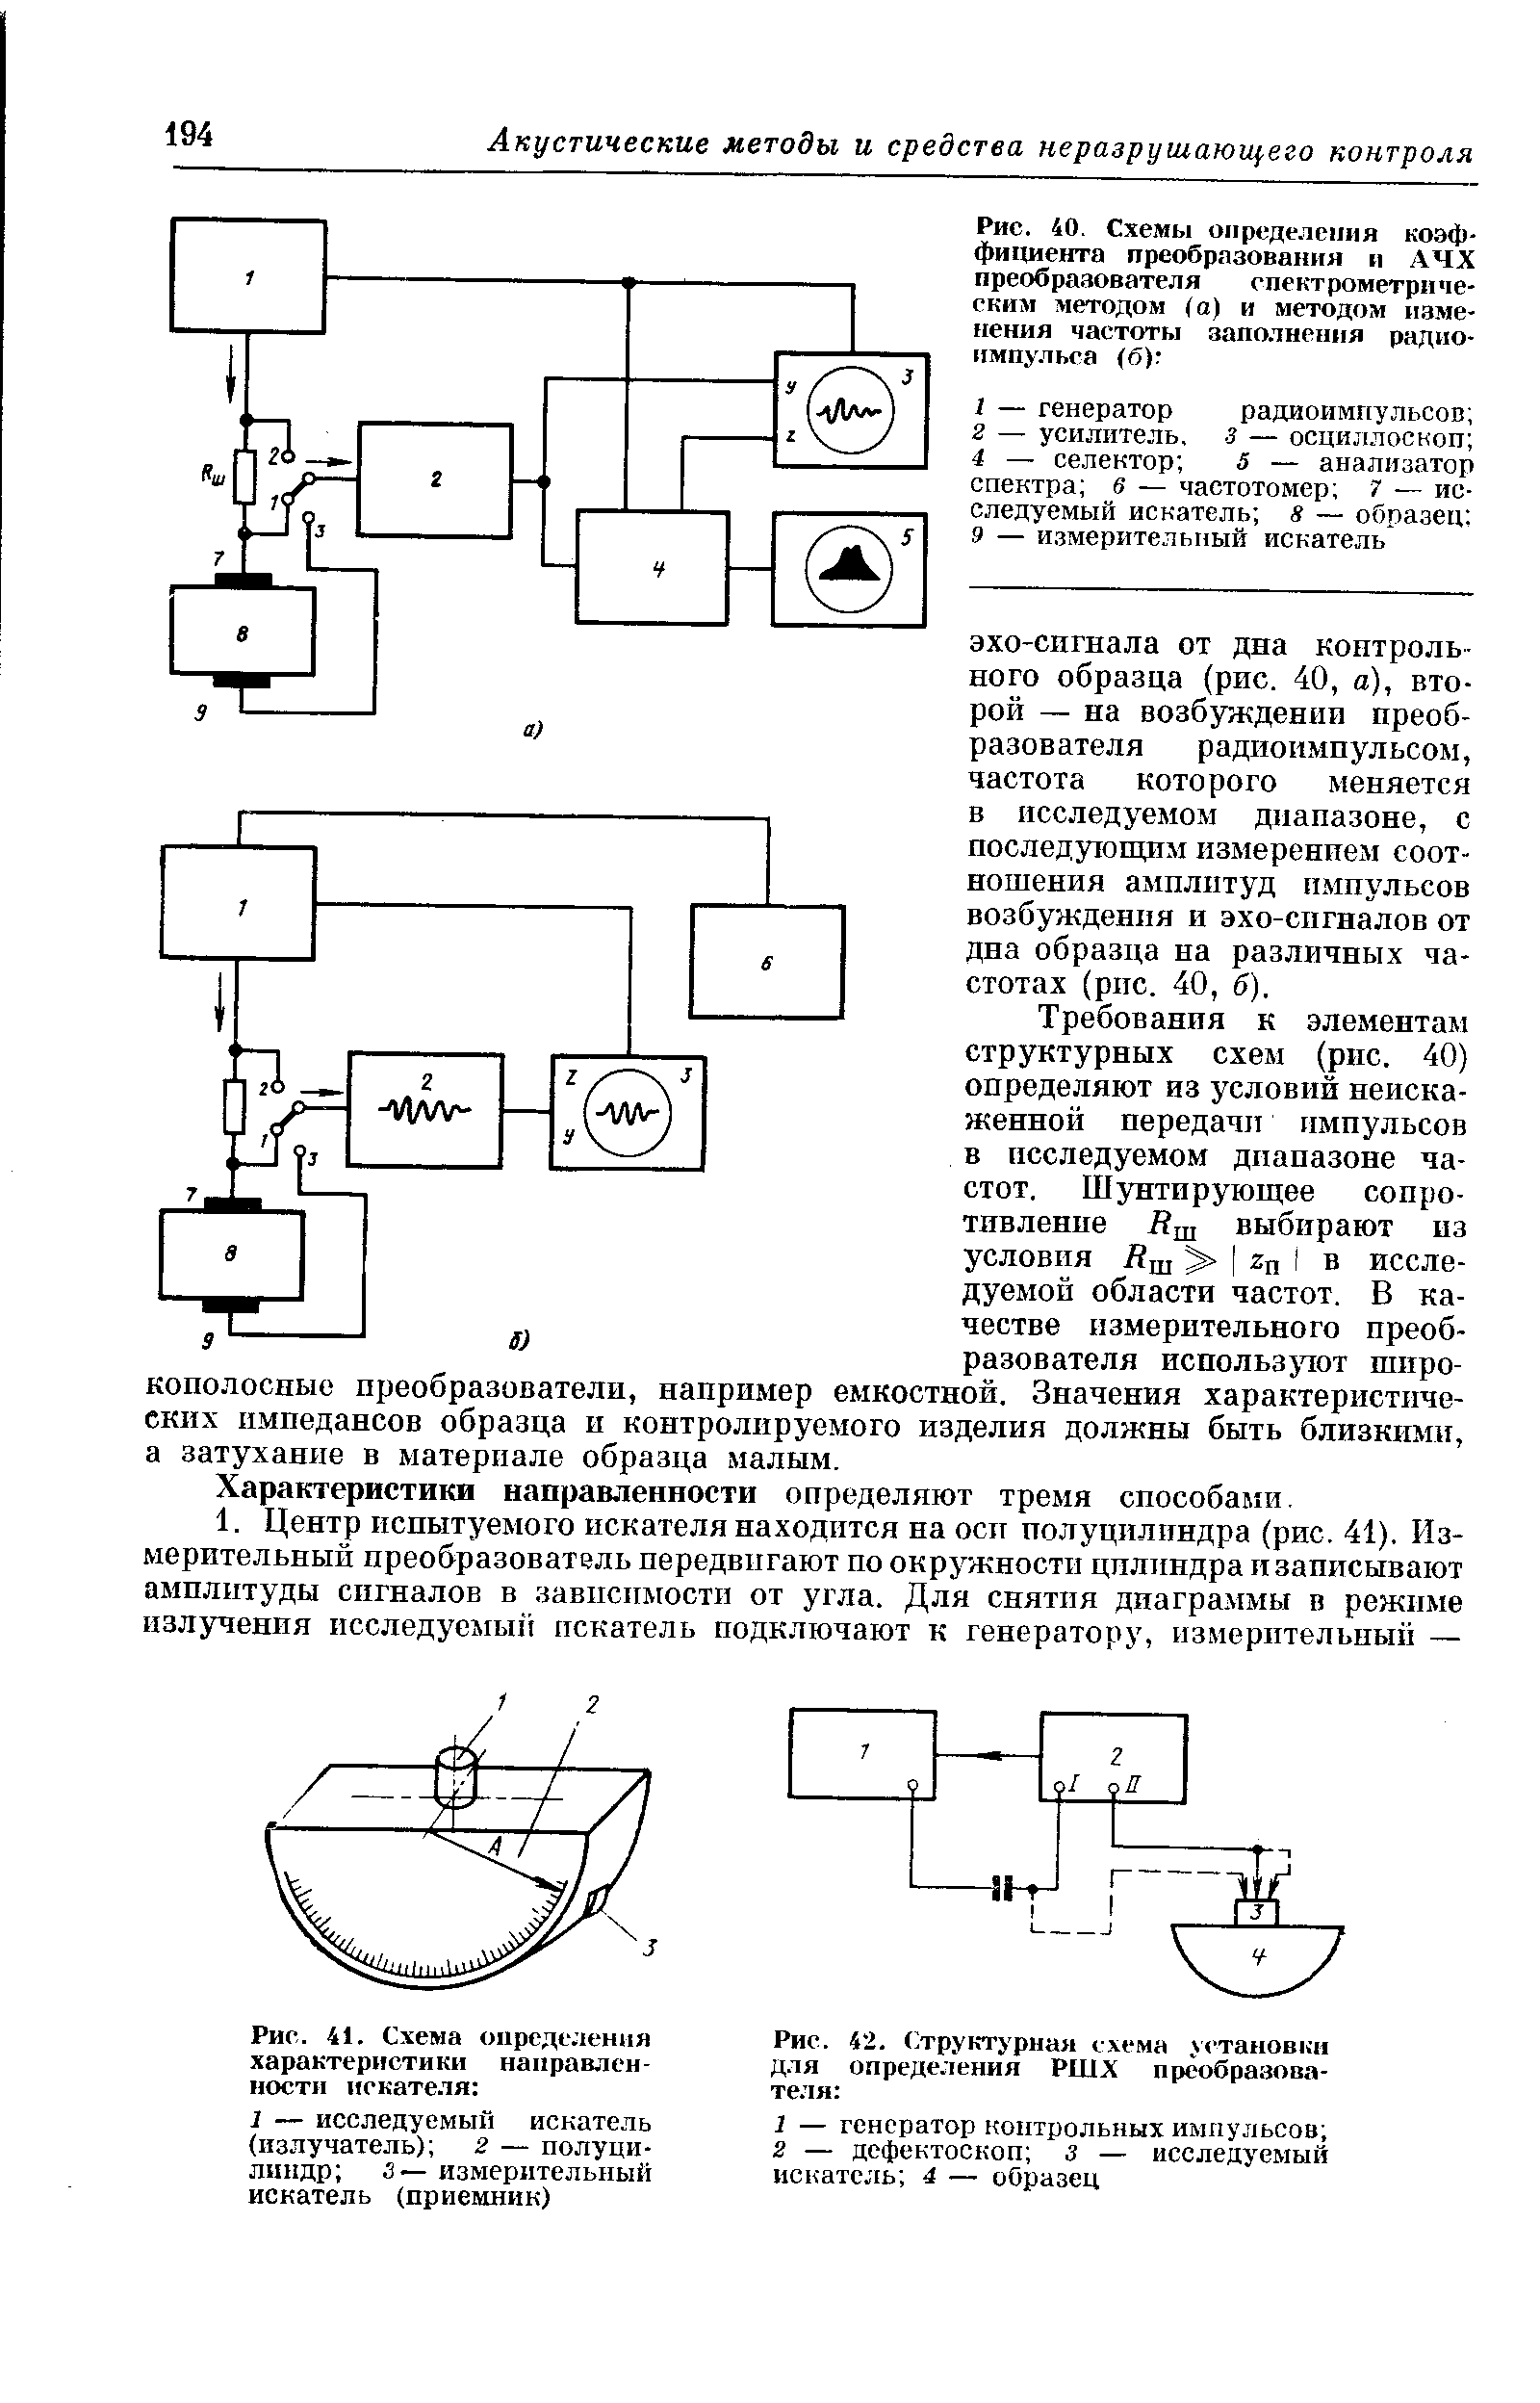 Рис. 42. (Структурная схема установки для определения РШХ преобразова-те 1я 
